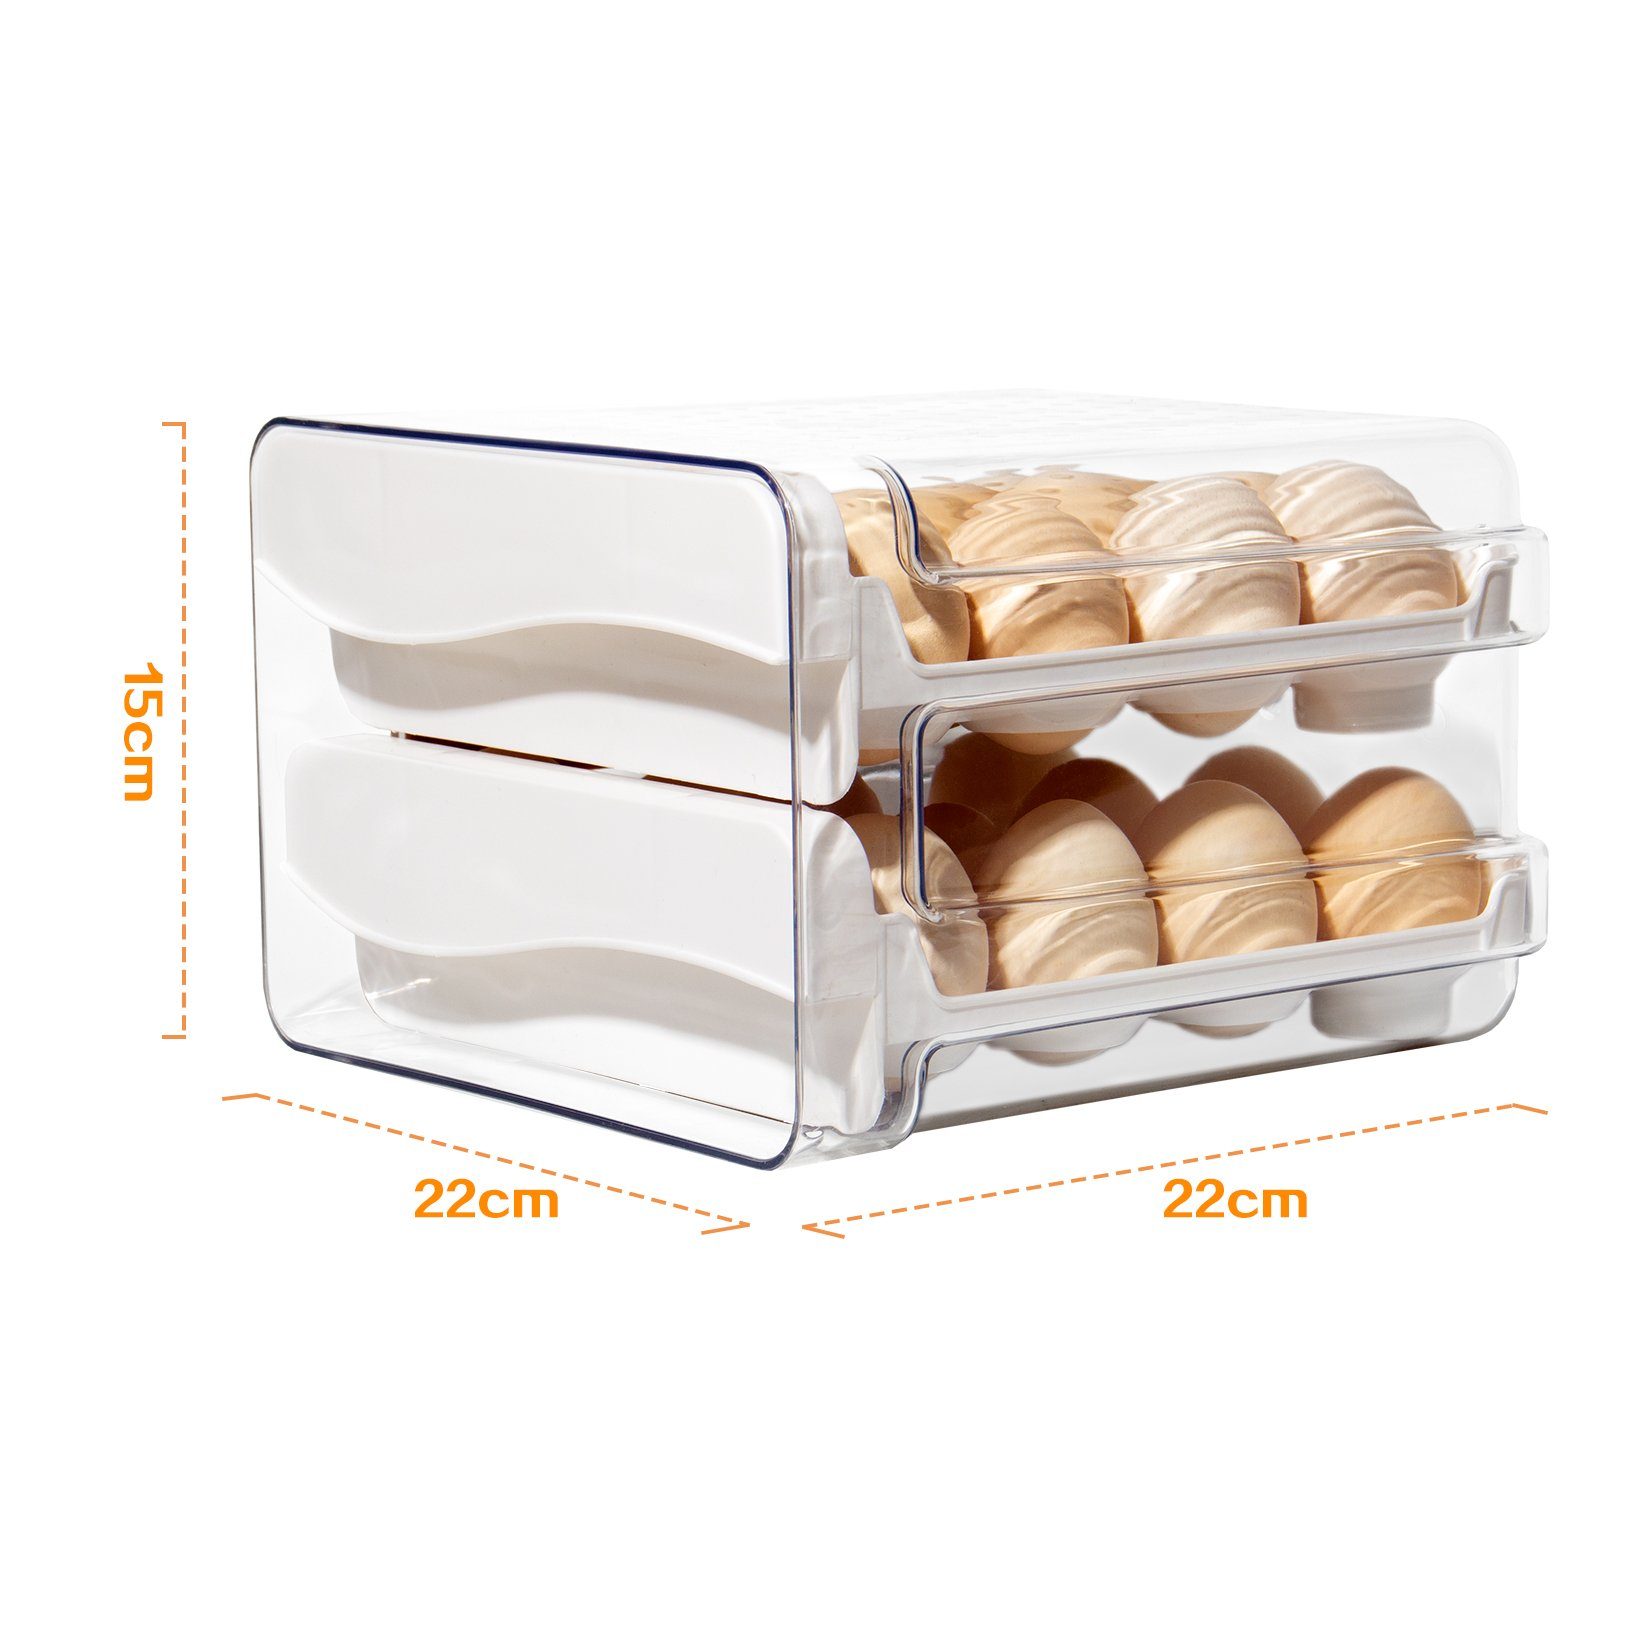 Zedelmaier Eierkorb eier, Eierbox Zeitschaltuhr, mit Doppelter Eierkarton Eierbehälter Kühlschrank für (STEG-232), Aufbewahrung 32 Eier Weiß, große